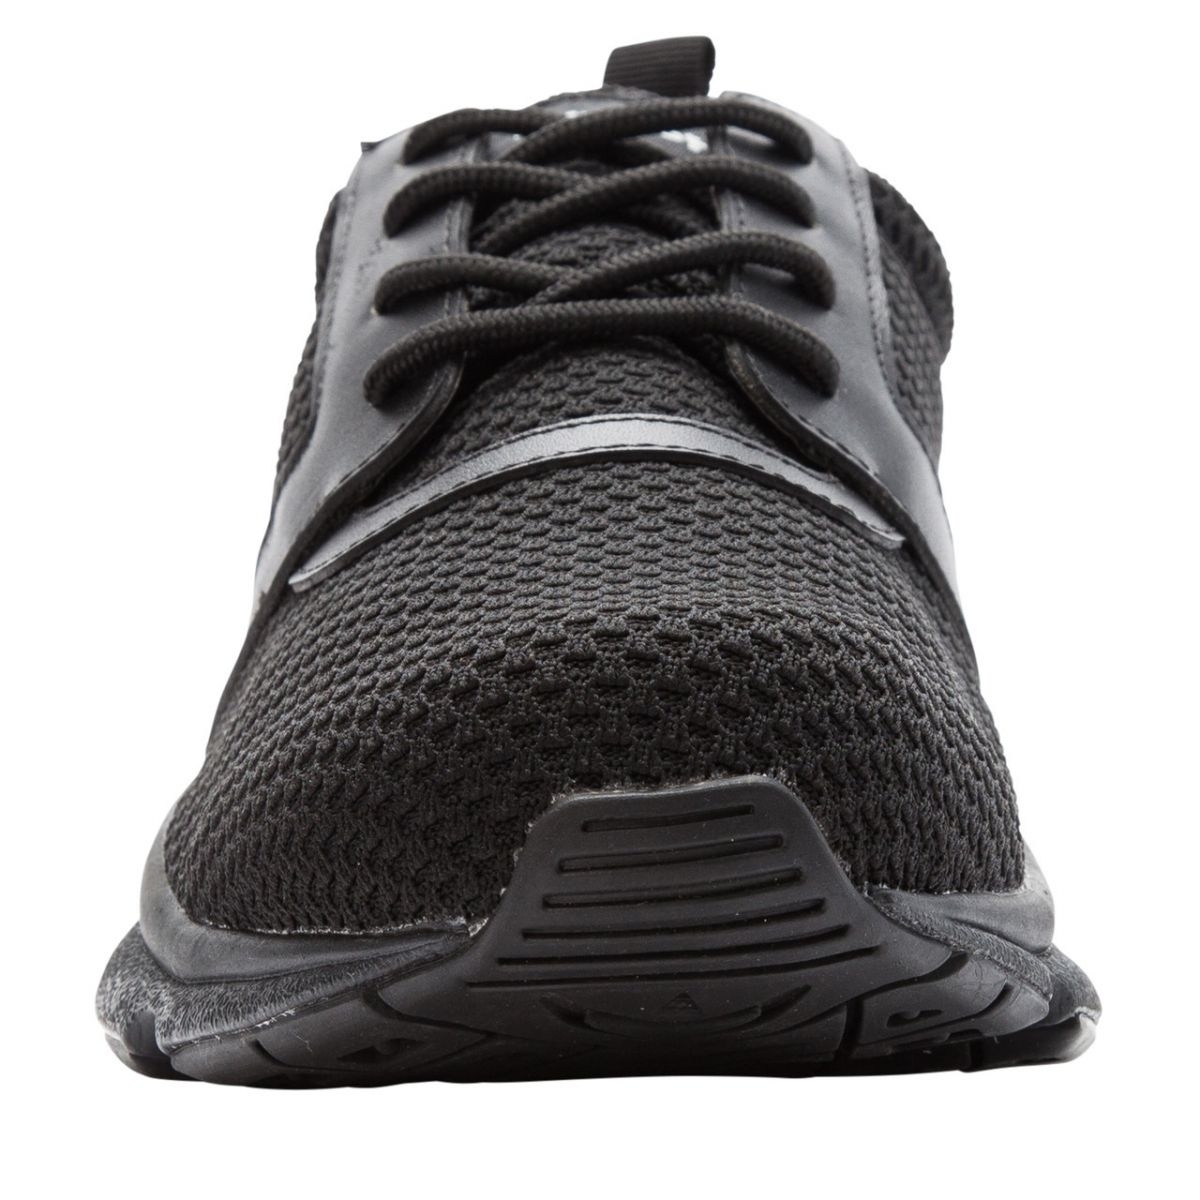 Propet Men's Stability X Walking Shoe Black - MAA012MBLK BLACK - BLACK, 16-5E